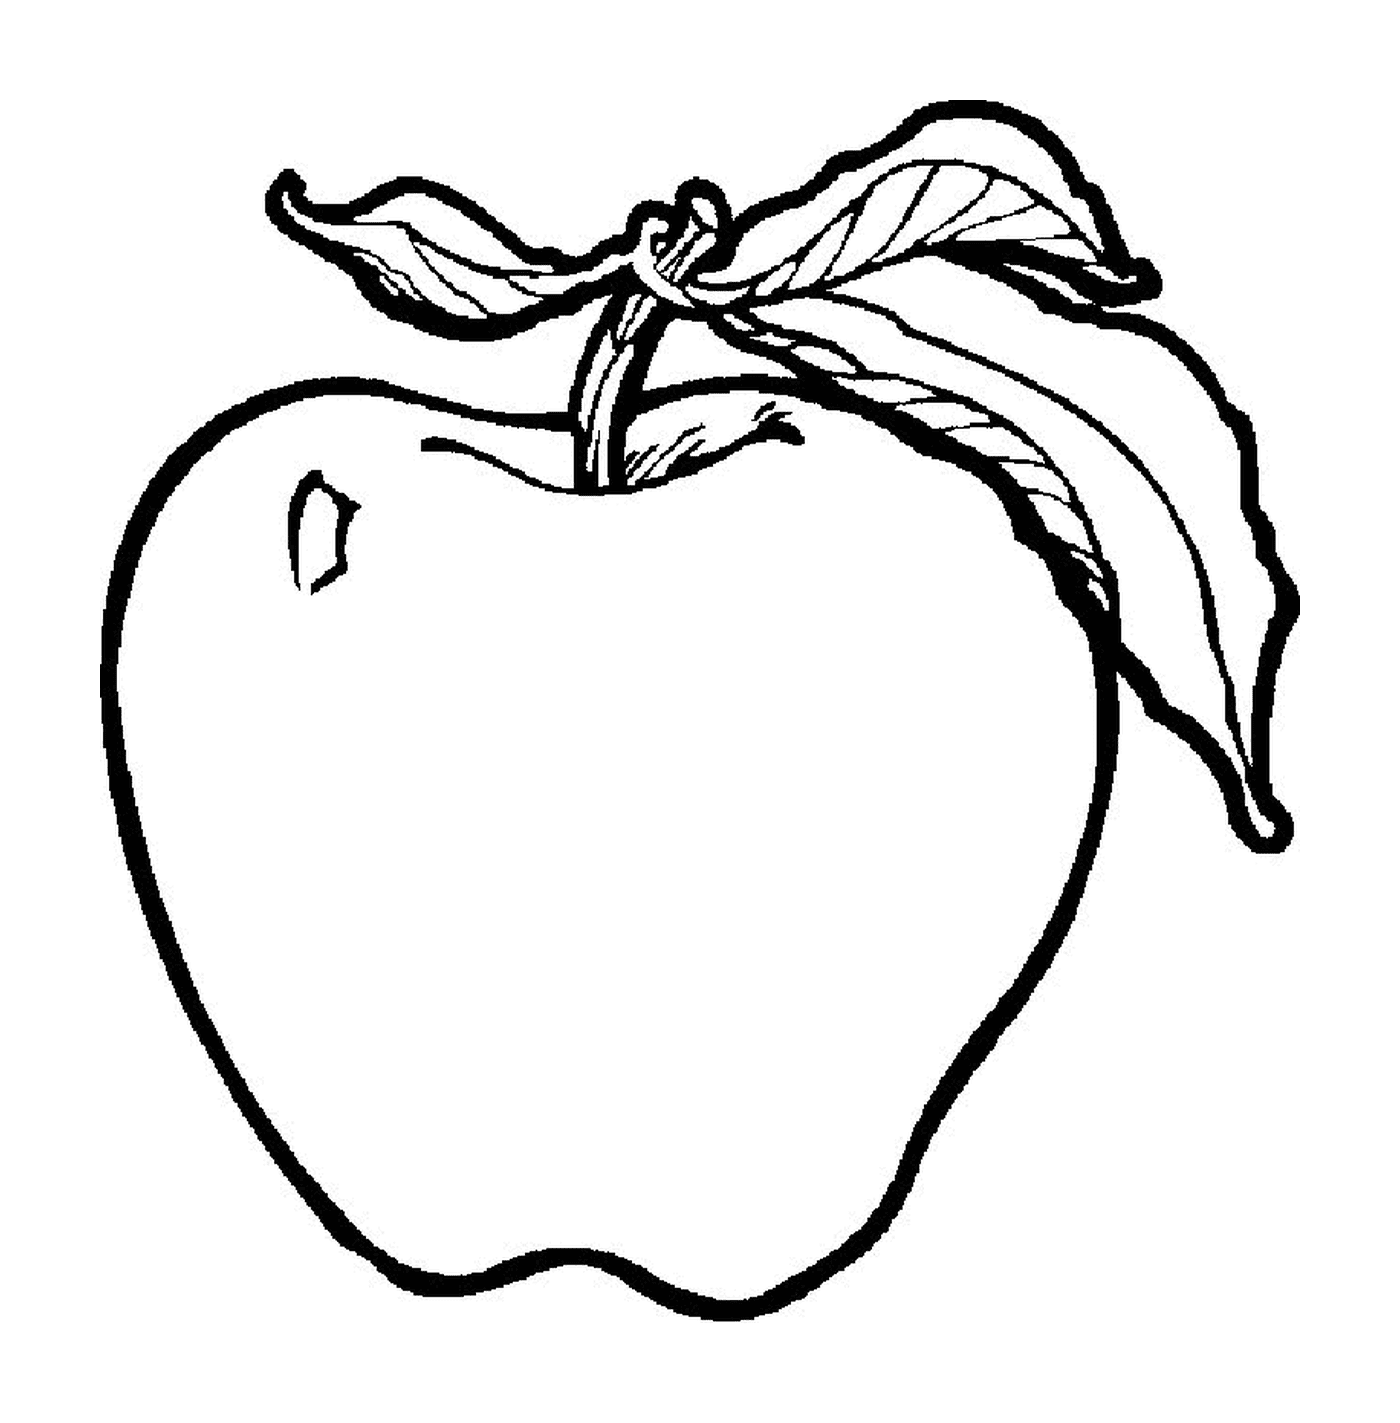  manzana crujiente con una hoja 